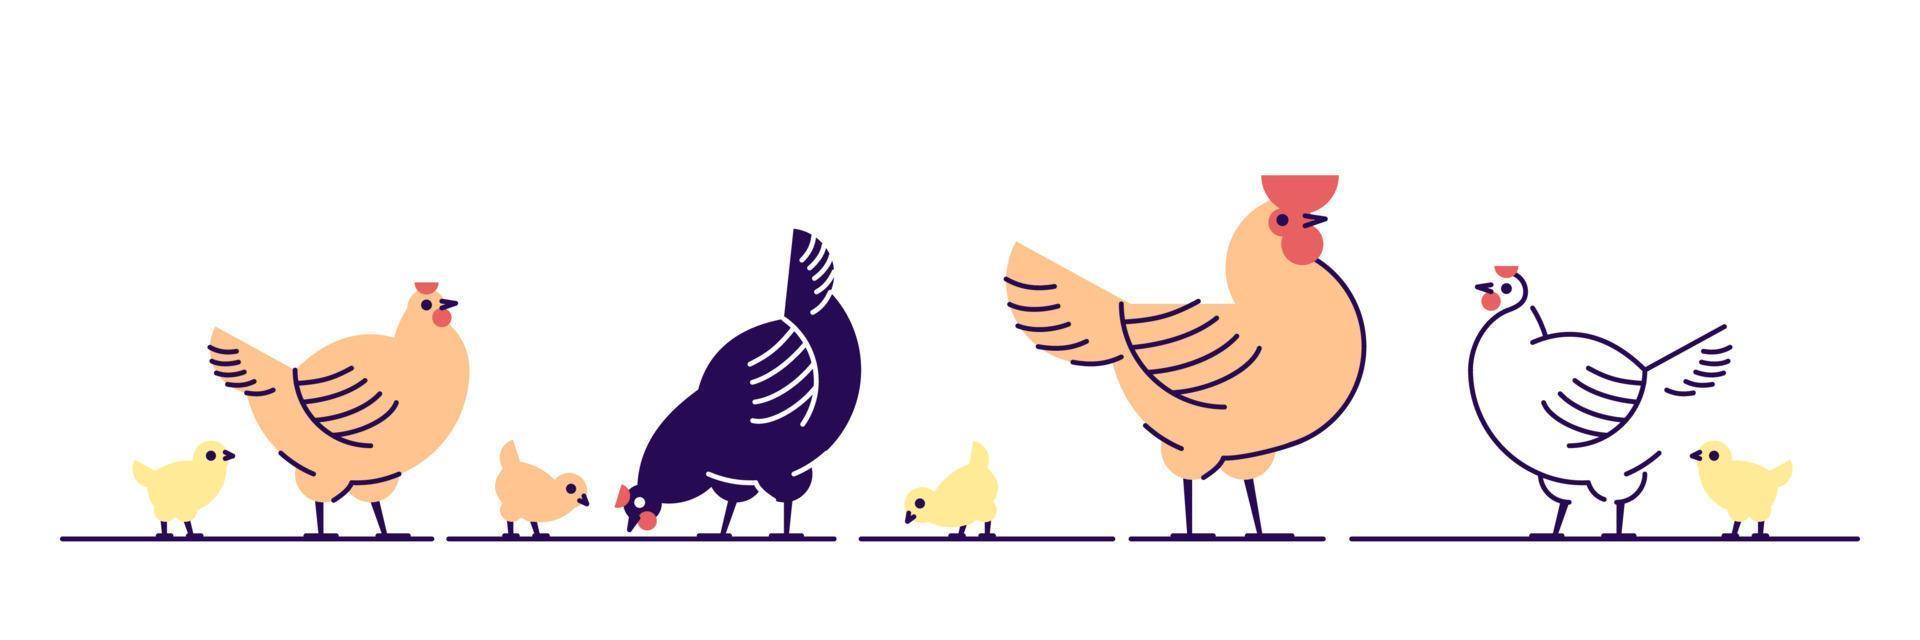 Hühner flachbild Vector Illustration. Mehrfarbige Küken, Hühner und Hahnkarikatur isolierte Gestaltungselemente mit Umriss. Hühnerfleischproduktion, Vogelzucht. Geflügelfarm, Tierhaltung